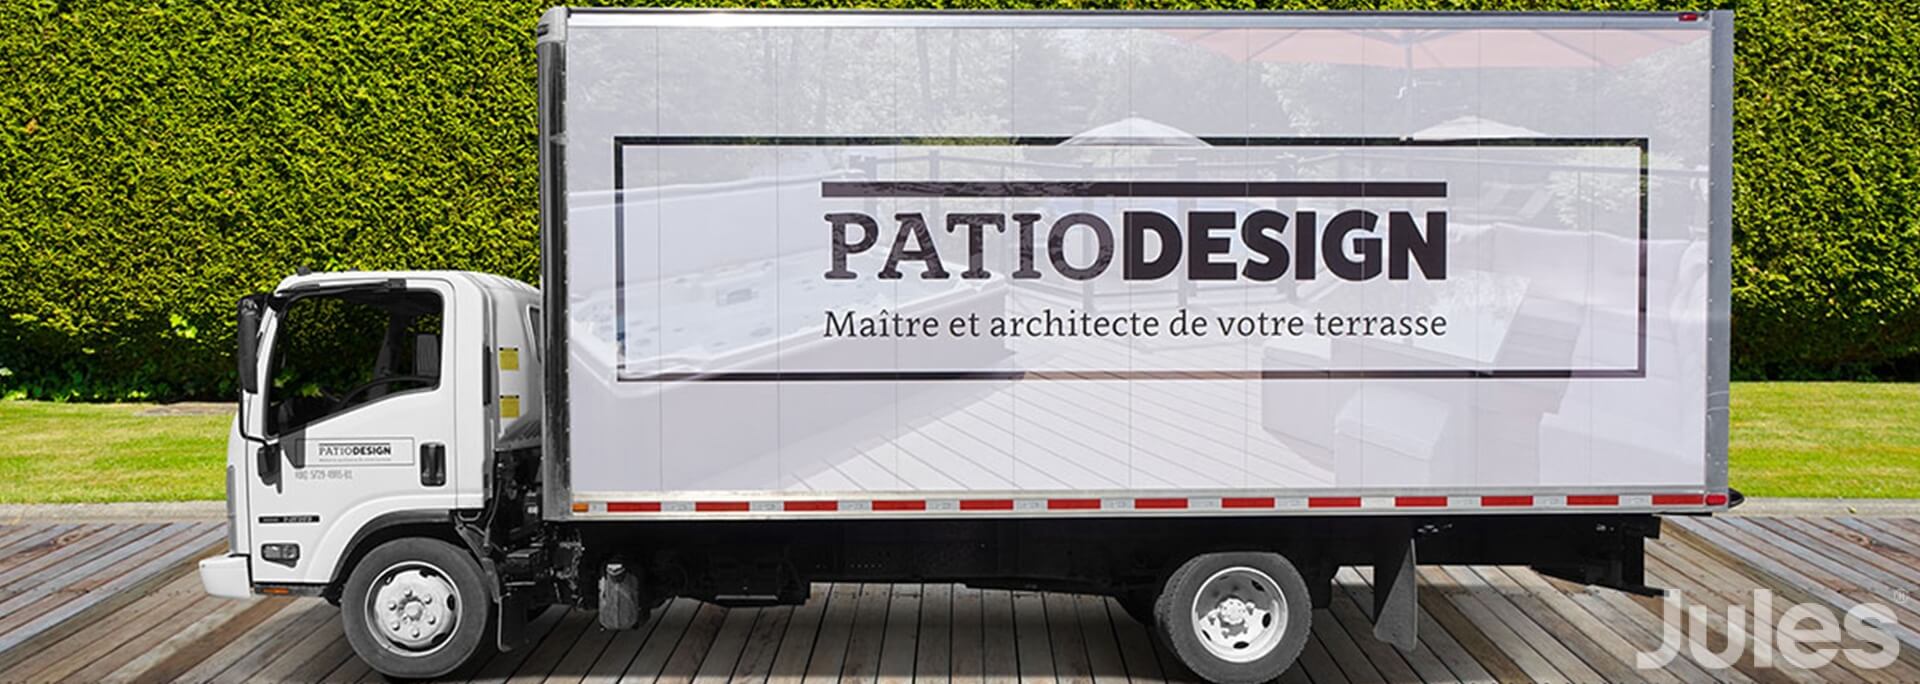 lettrage cube patio design terrasse full wrap camion cube par jules communications flotte